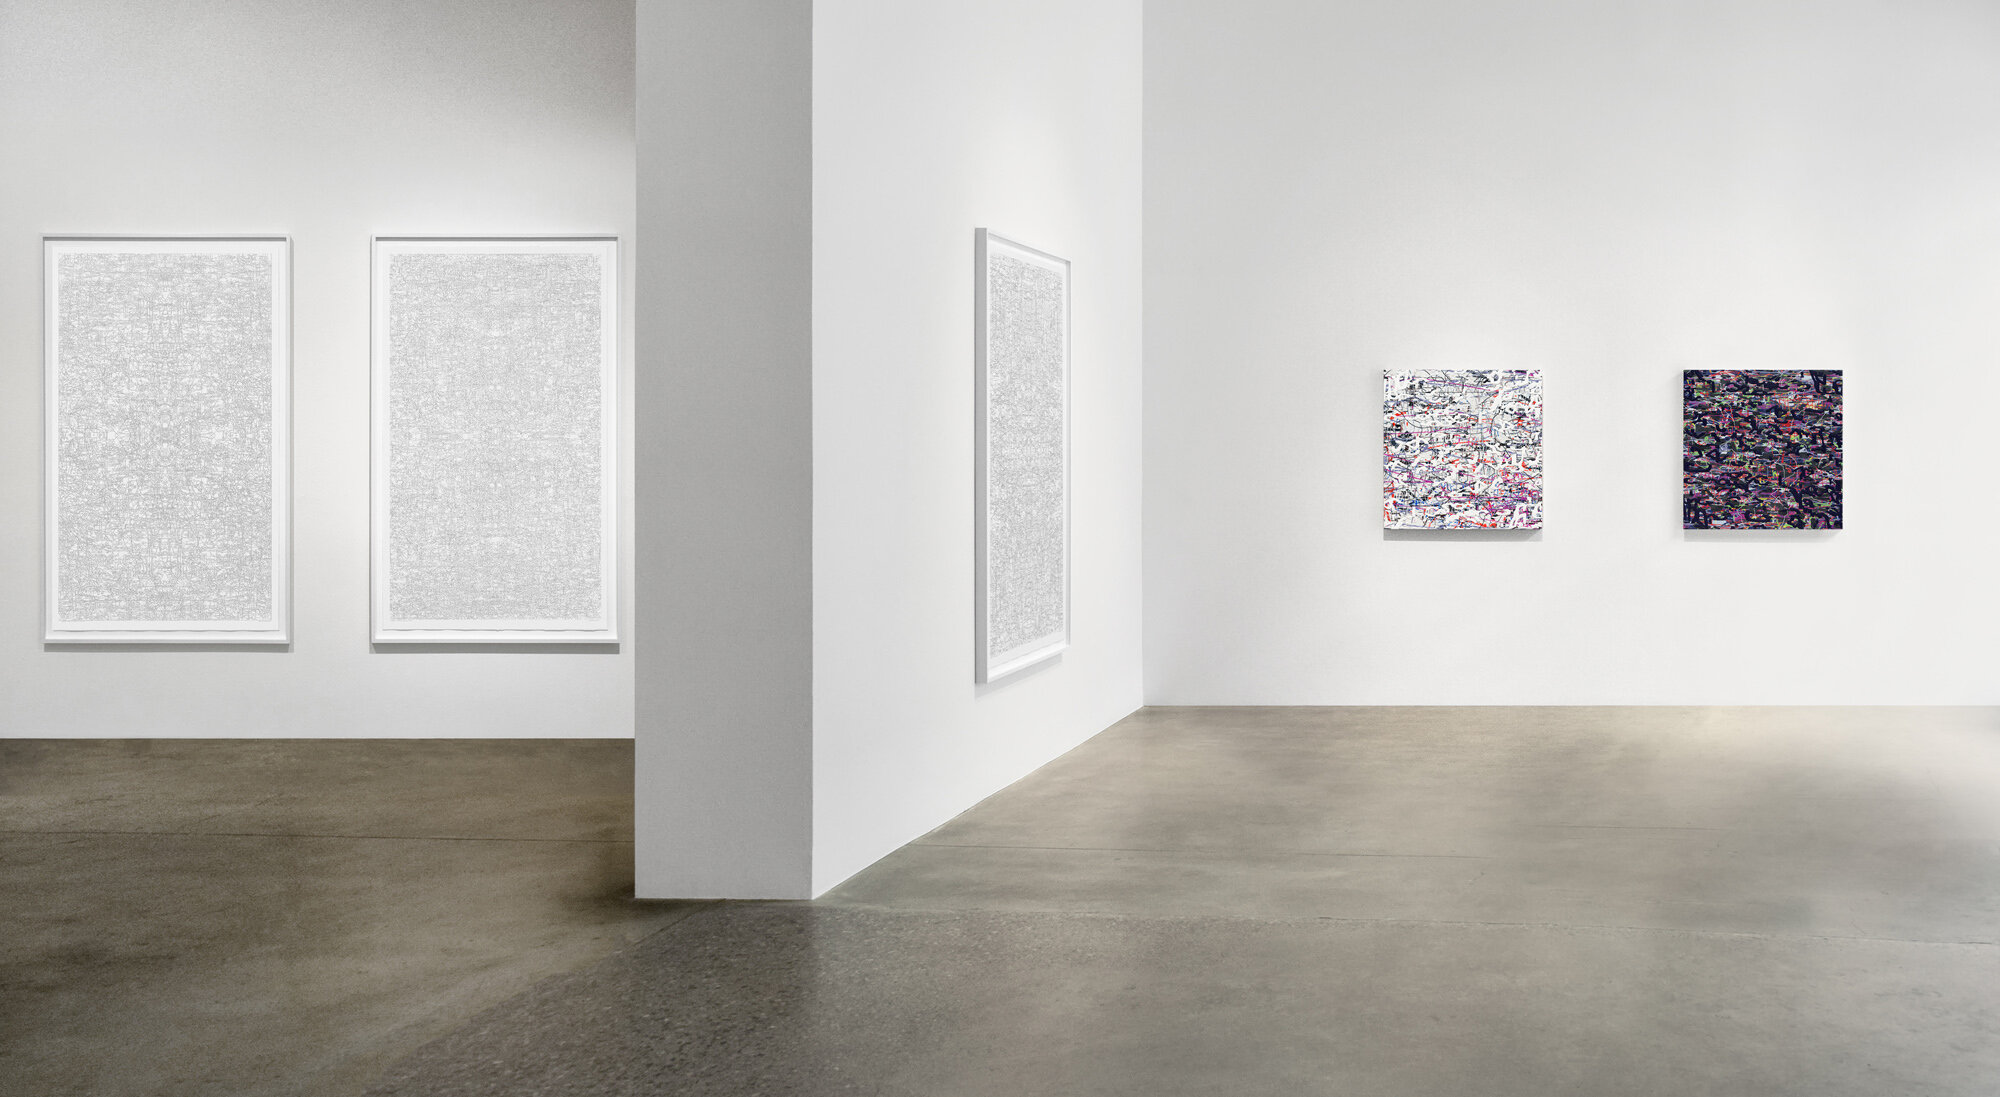  [installation]  Firmament,  2020 Robischon Gallery 